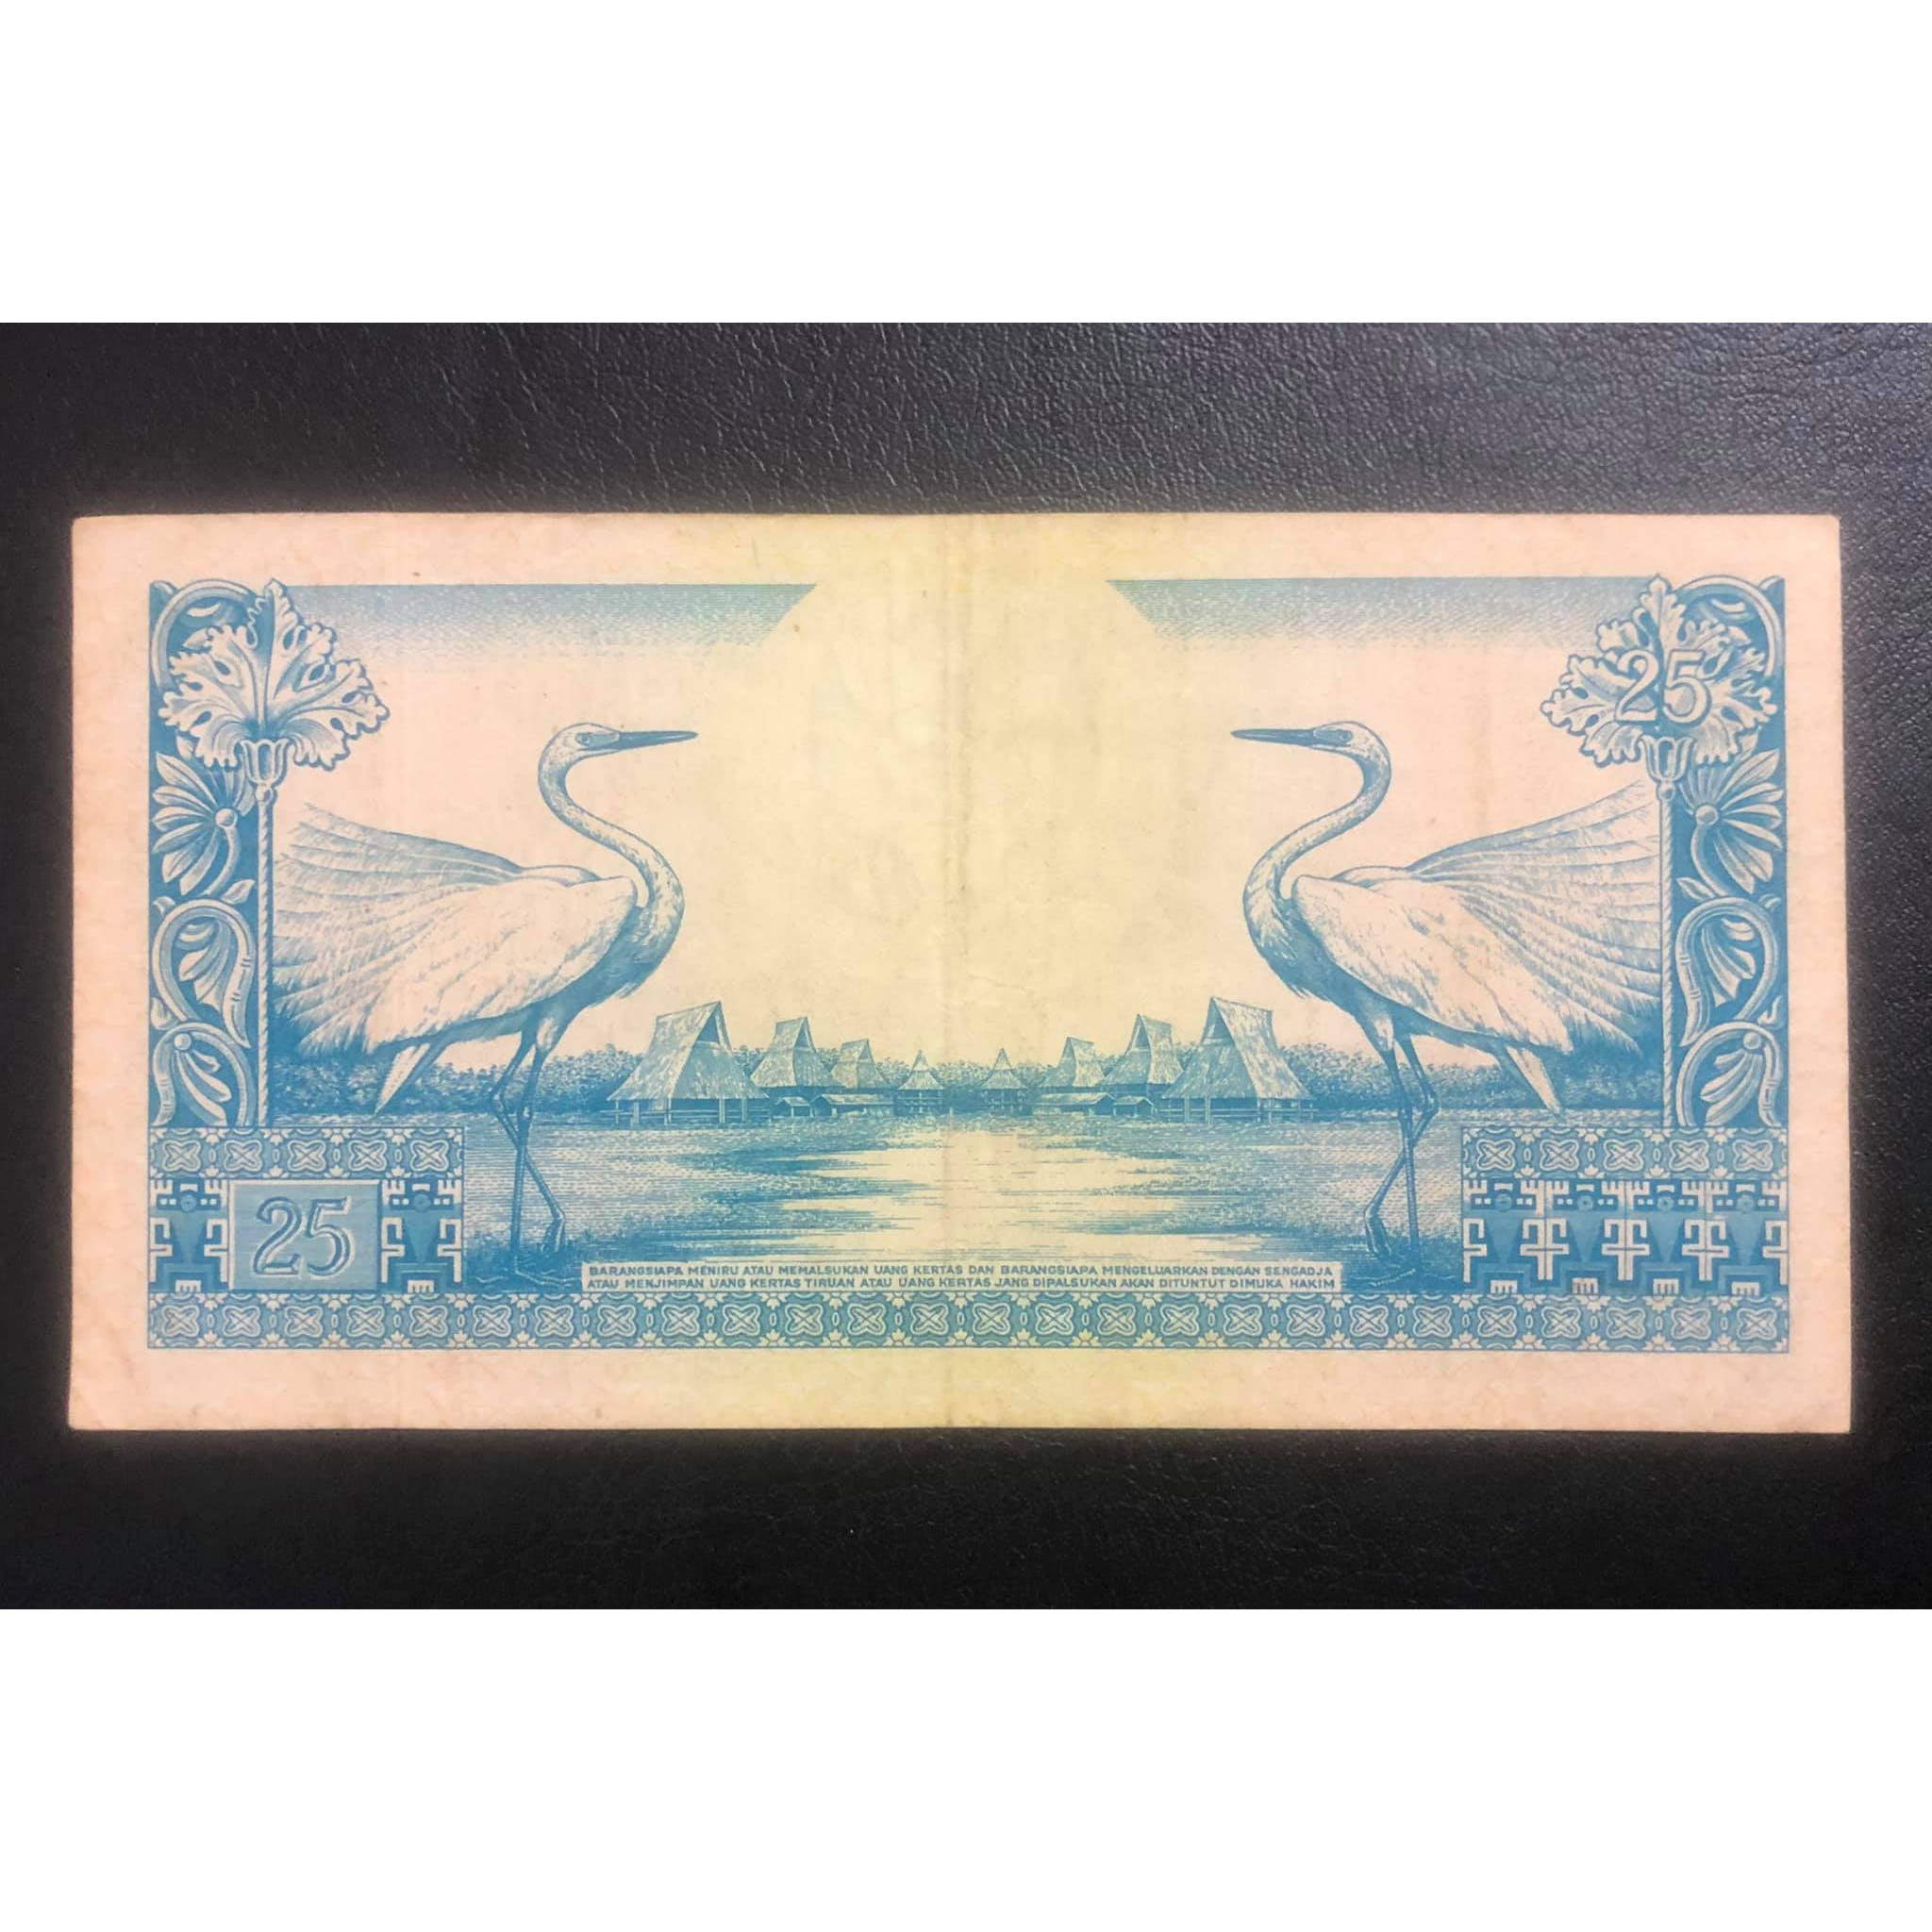 Tiền Indonesia 25 rupiah con chim sưu tầm